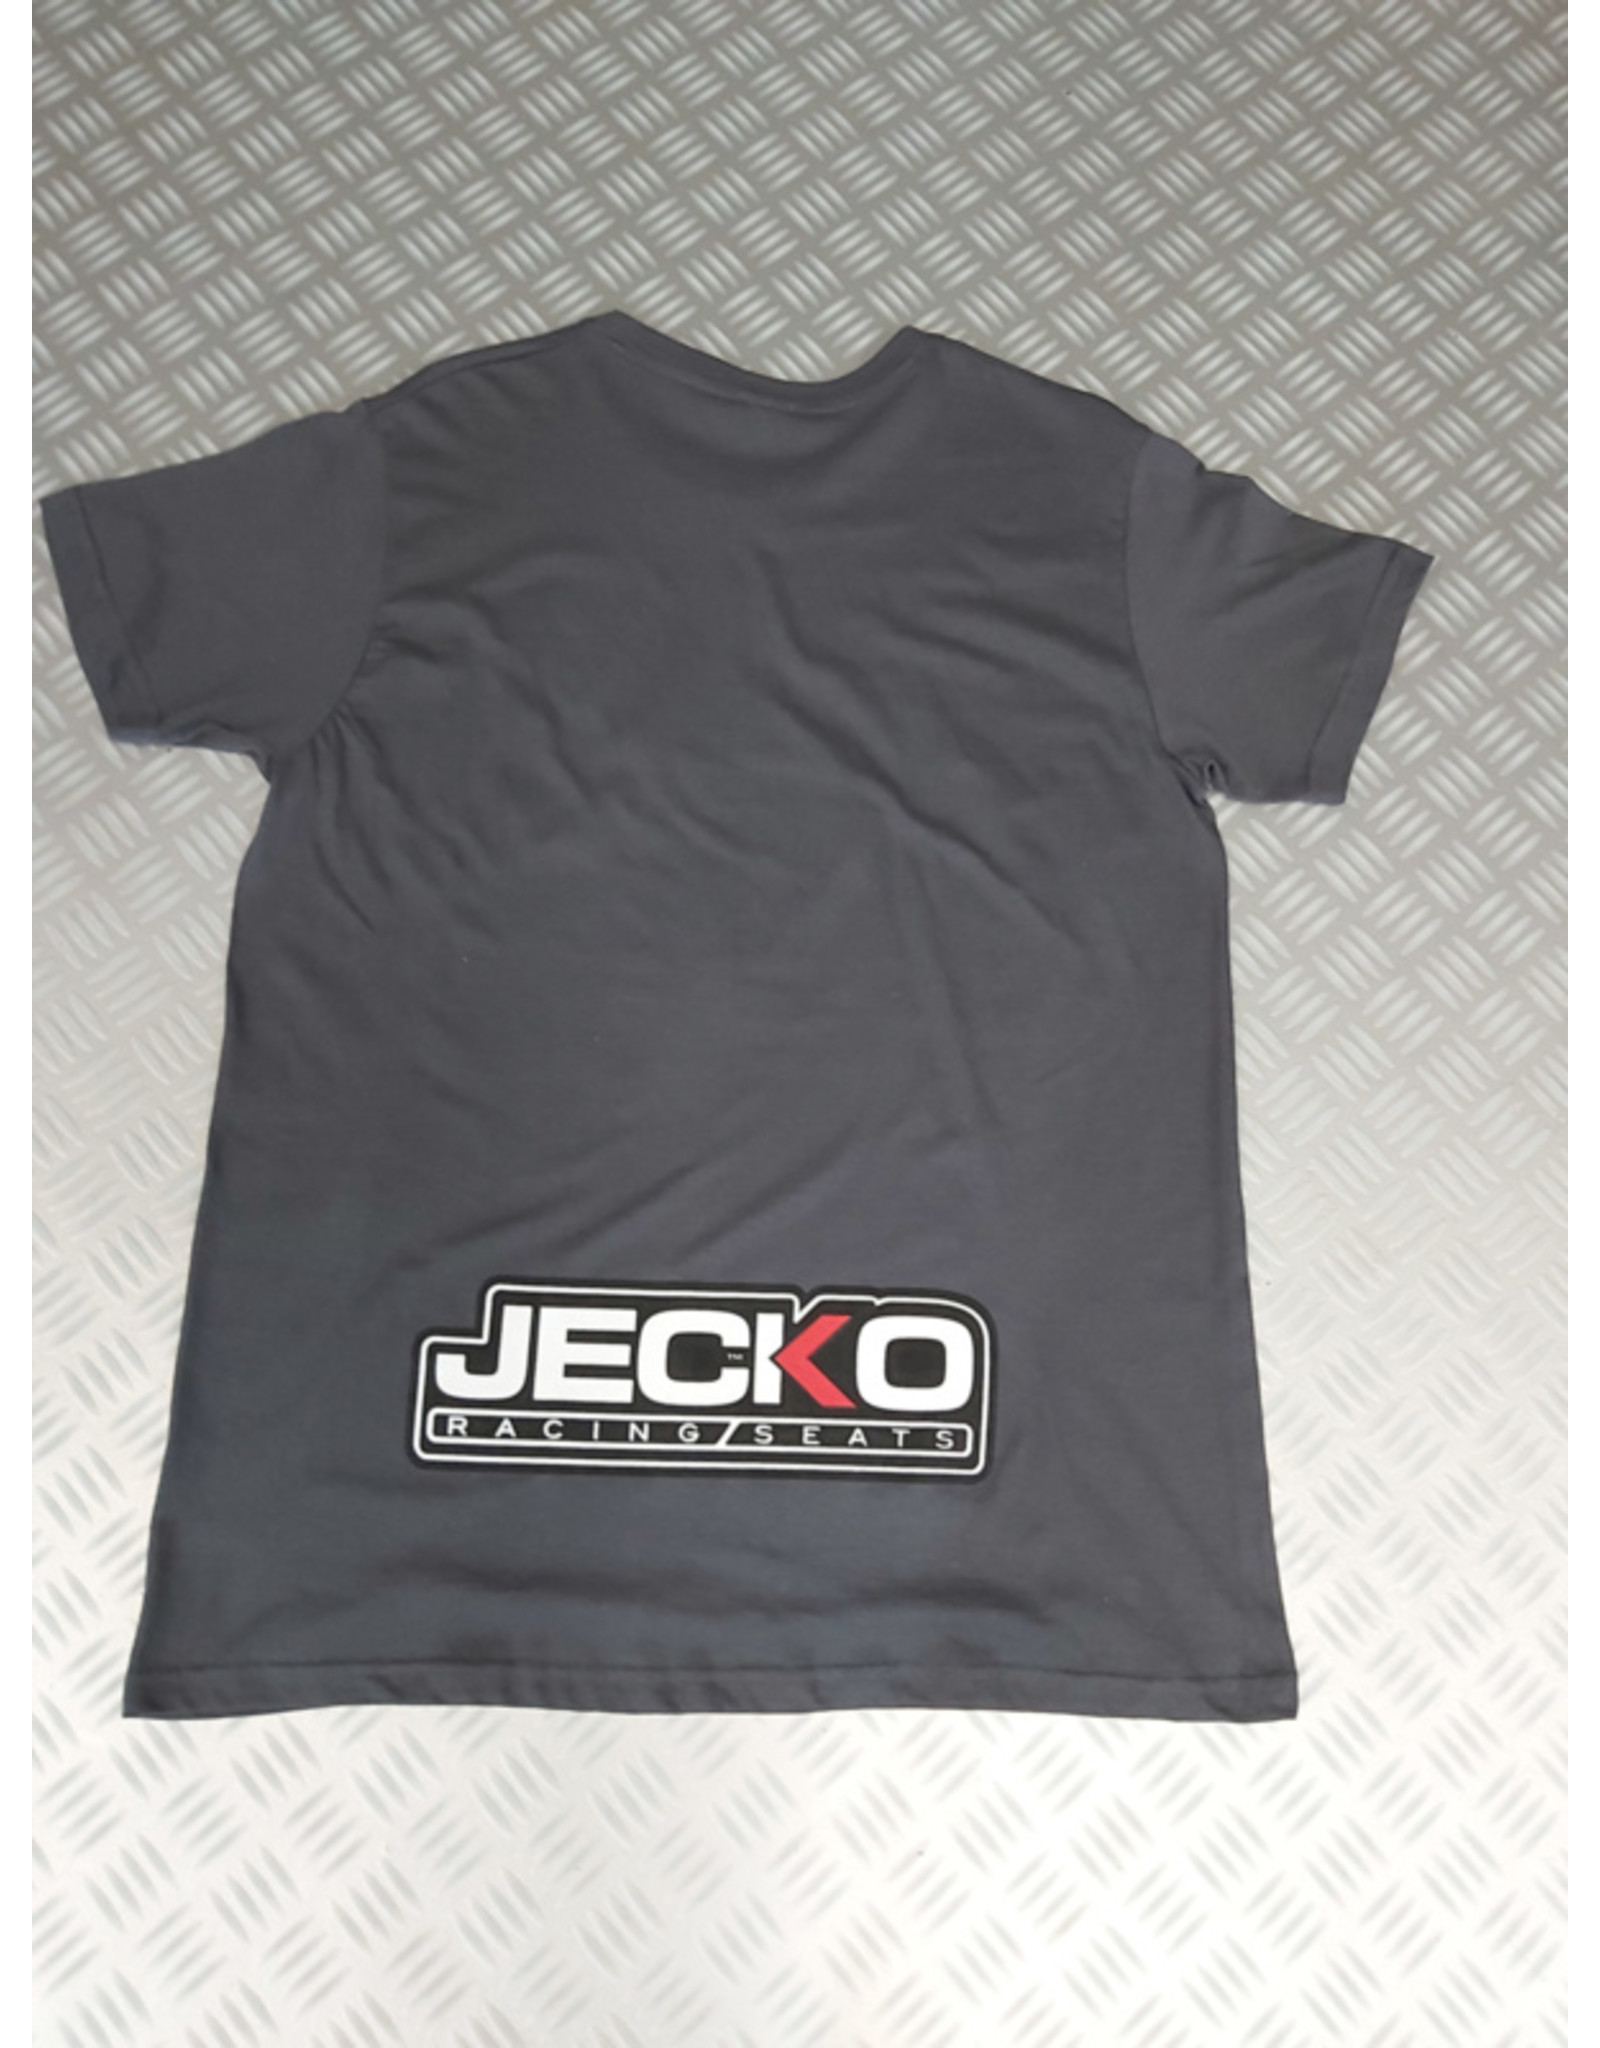 Jecko Jecko T-shisrt size L